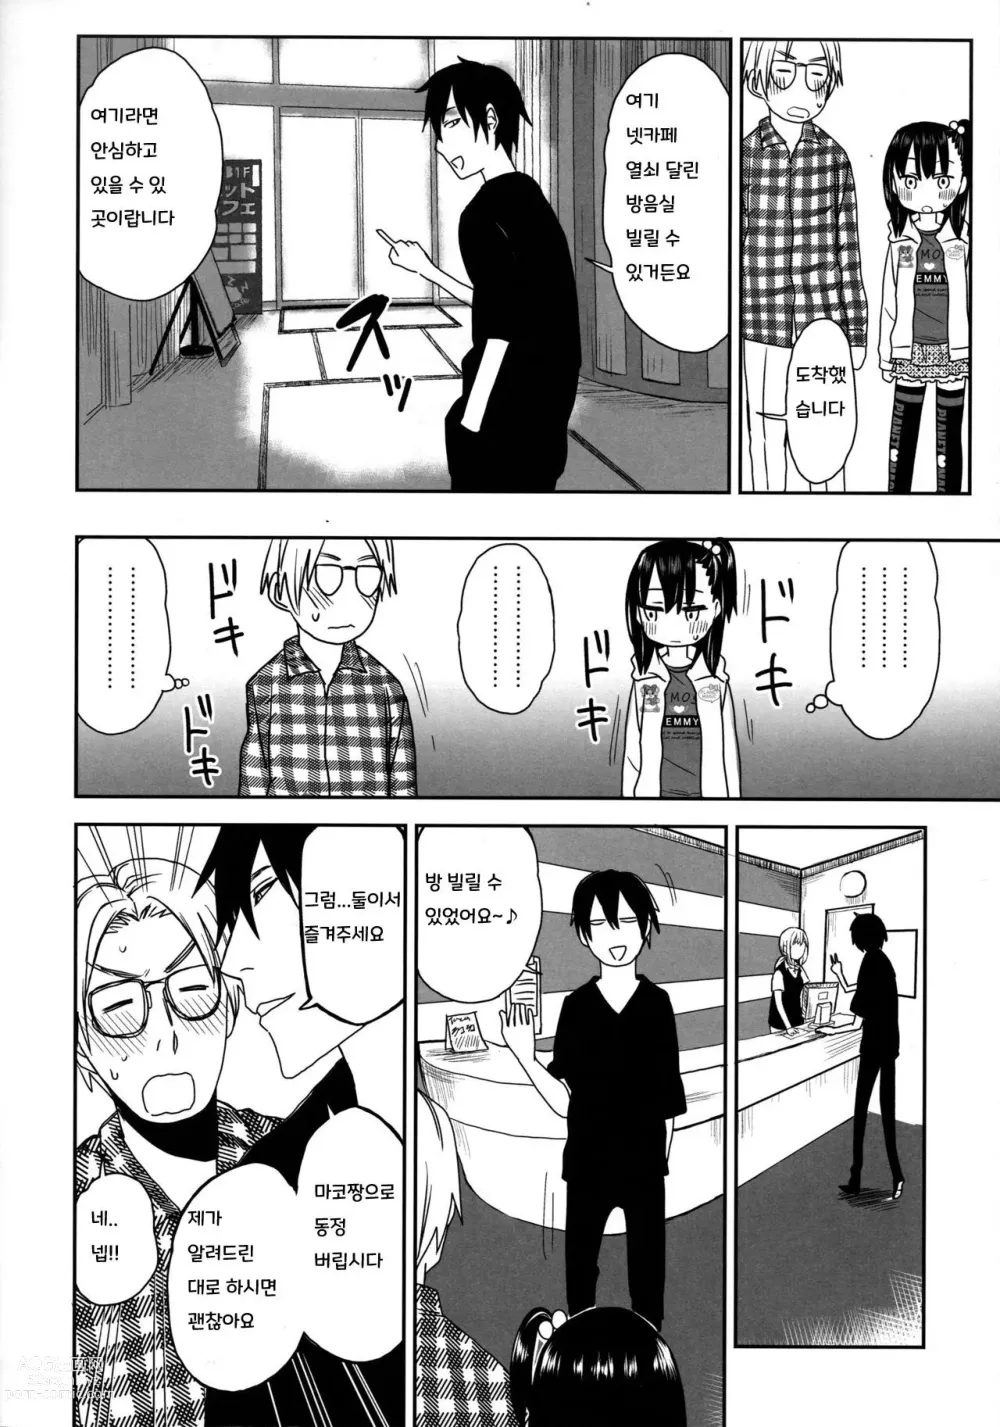 Page 14 of doujinshi Tonari no Mako-chan Season 2 Vol. 2